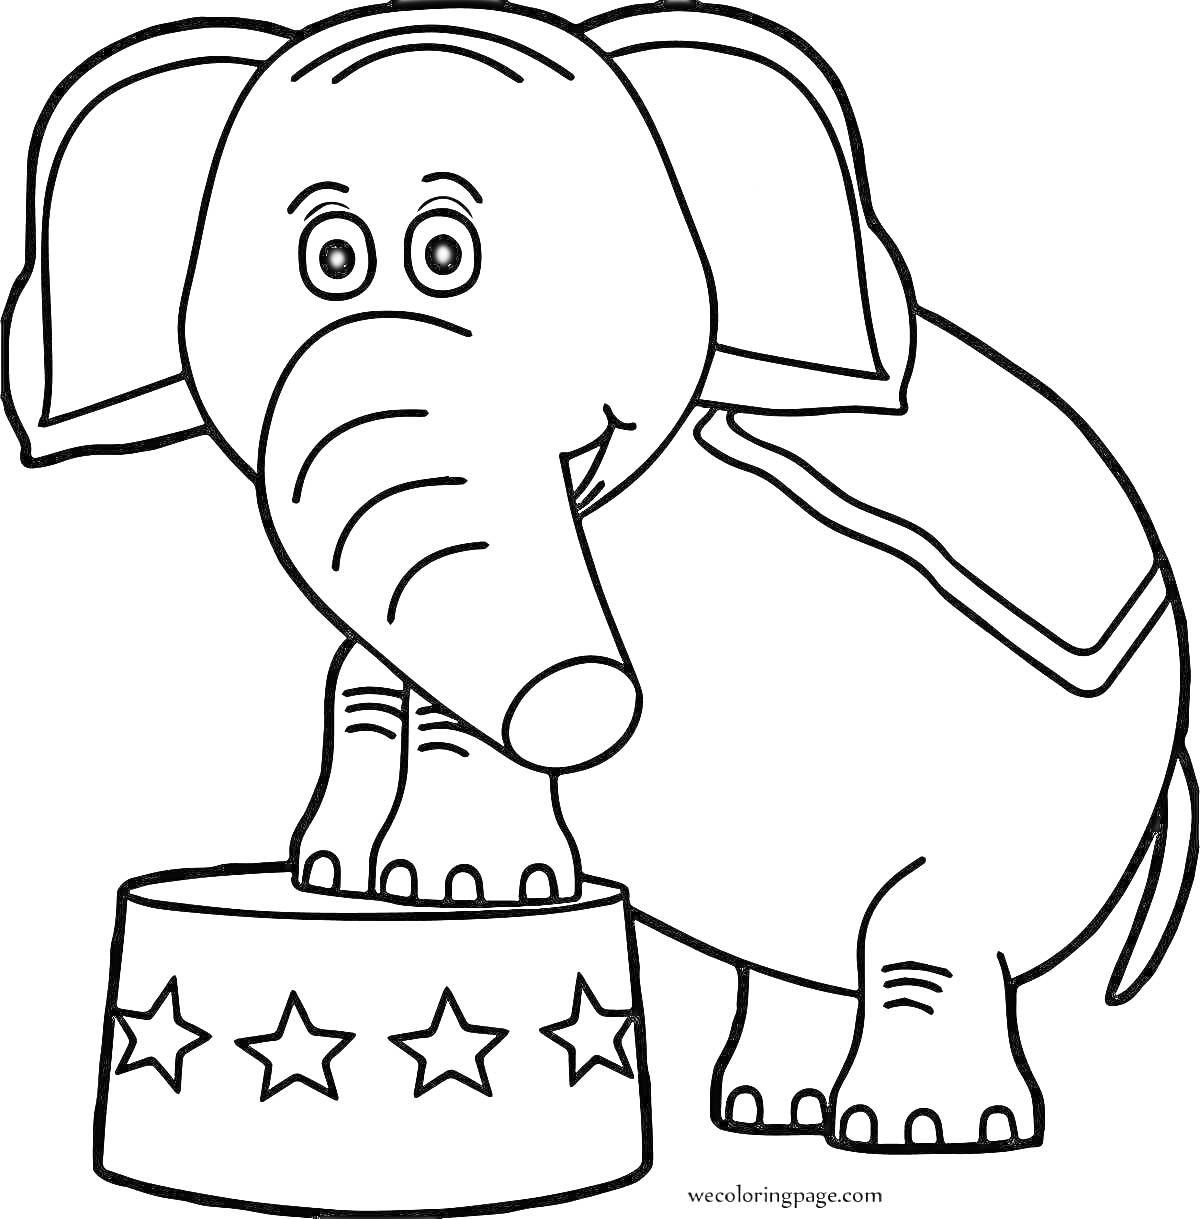 Раскраска Слон в цирке на тумбе с украшением в виде звезд